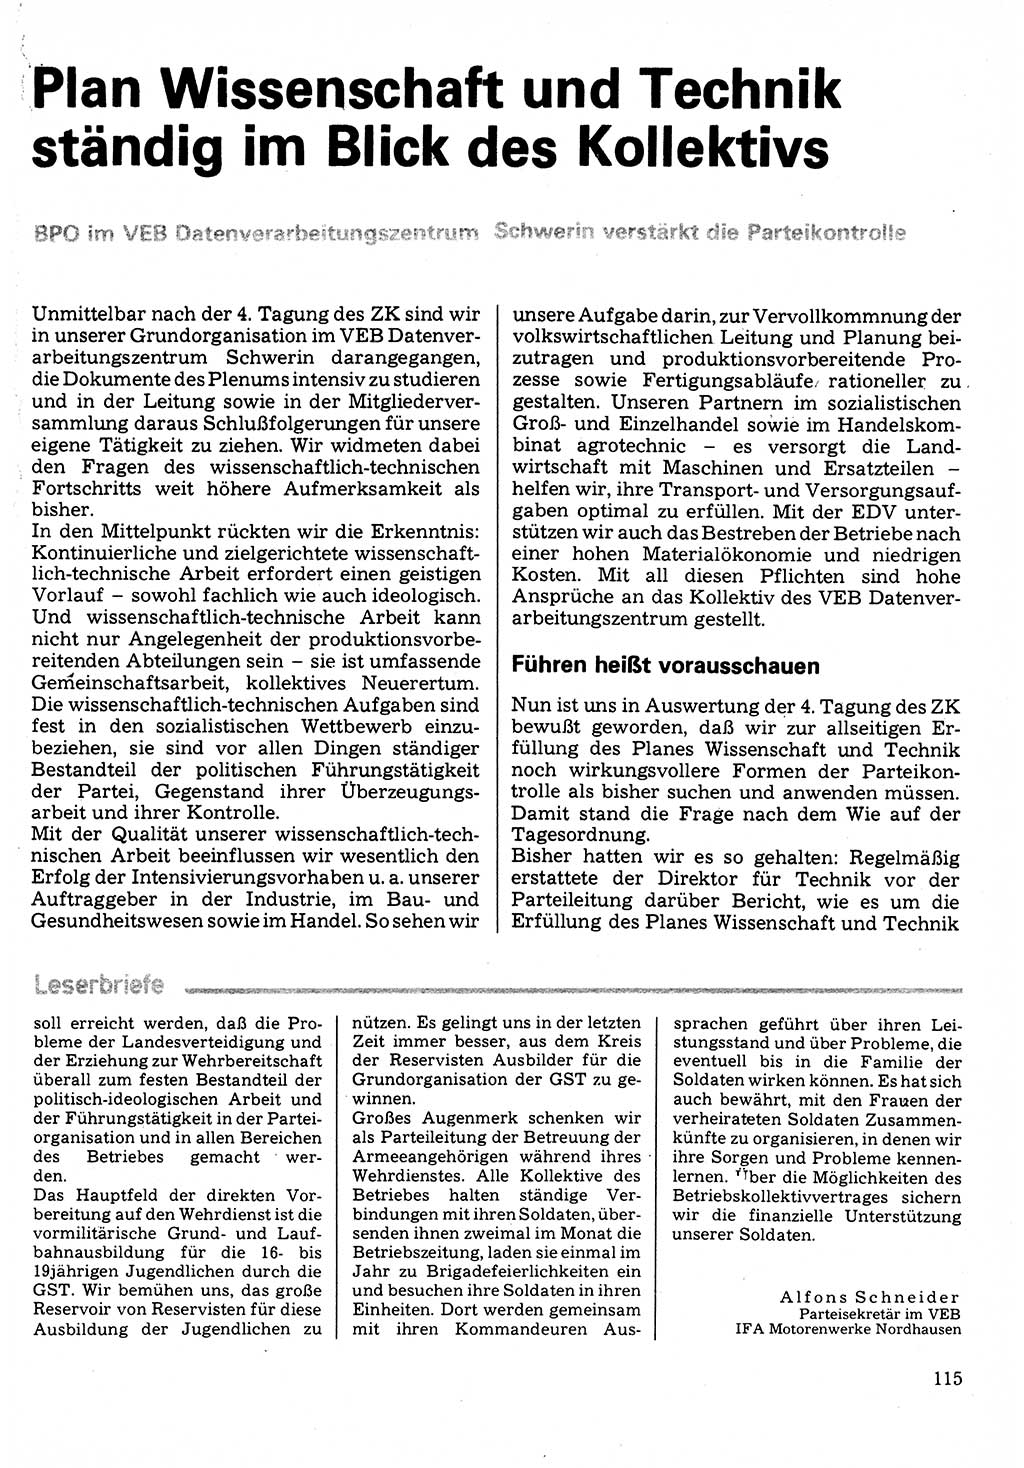 Neuer Weg (NW), Organ des Zentralkomitees (ZK) der SED (Sozialistische Einheitspartei Deutschlands) für Fragen des Parteilebens, 32. Jahrgang [Deutsche Demokratische Republik (DDR)] 1977, Seite 115 (NW ZK SED DDR 1977, S. 115)